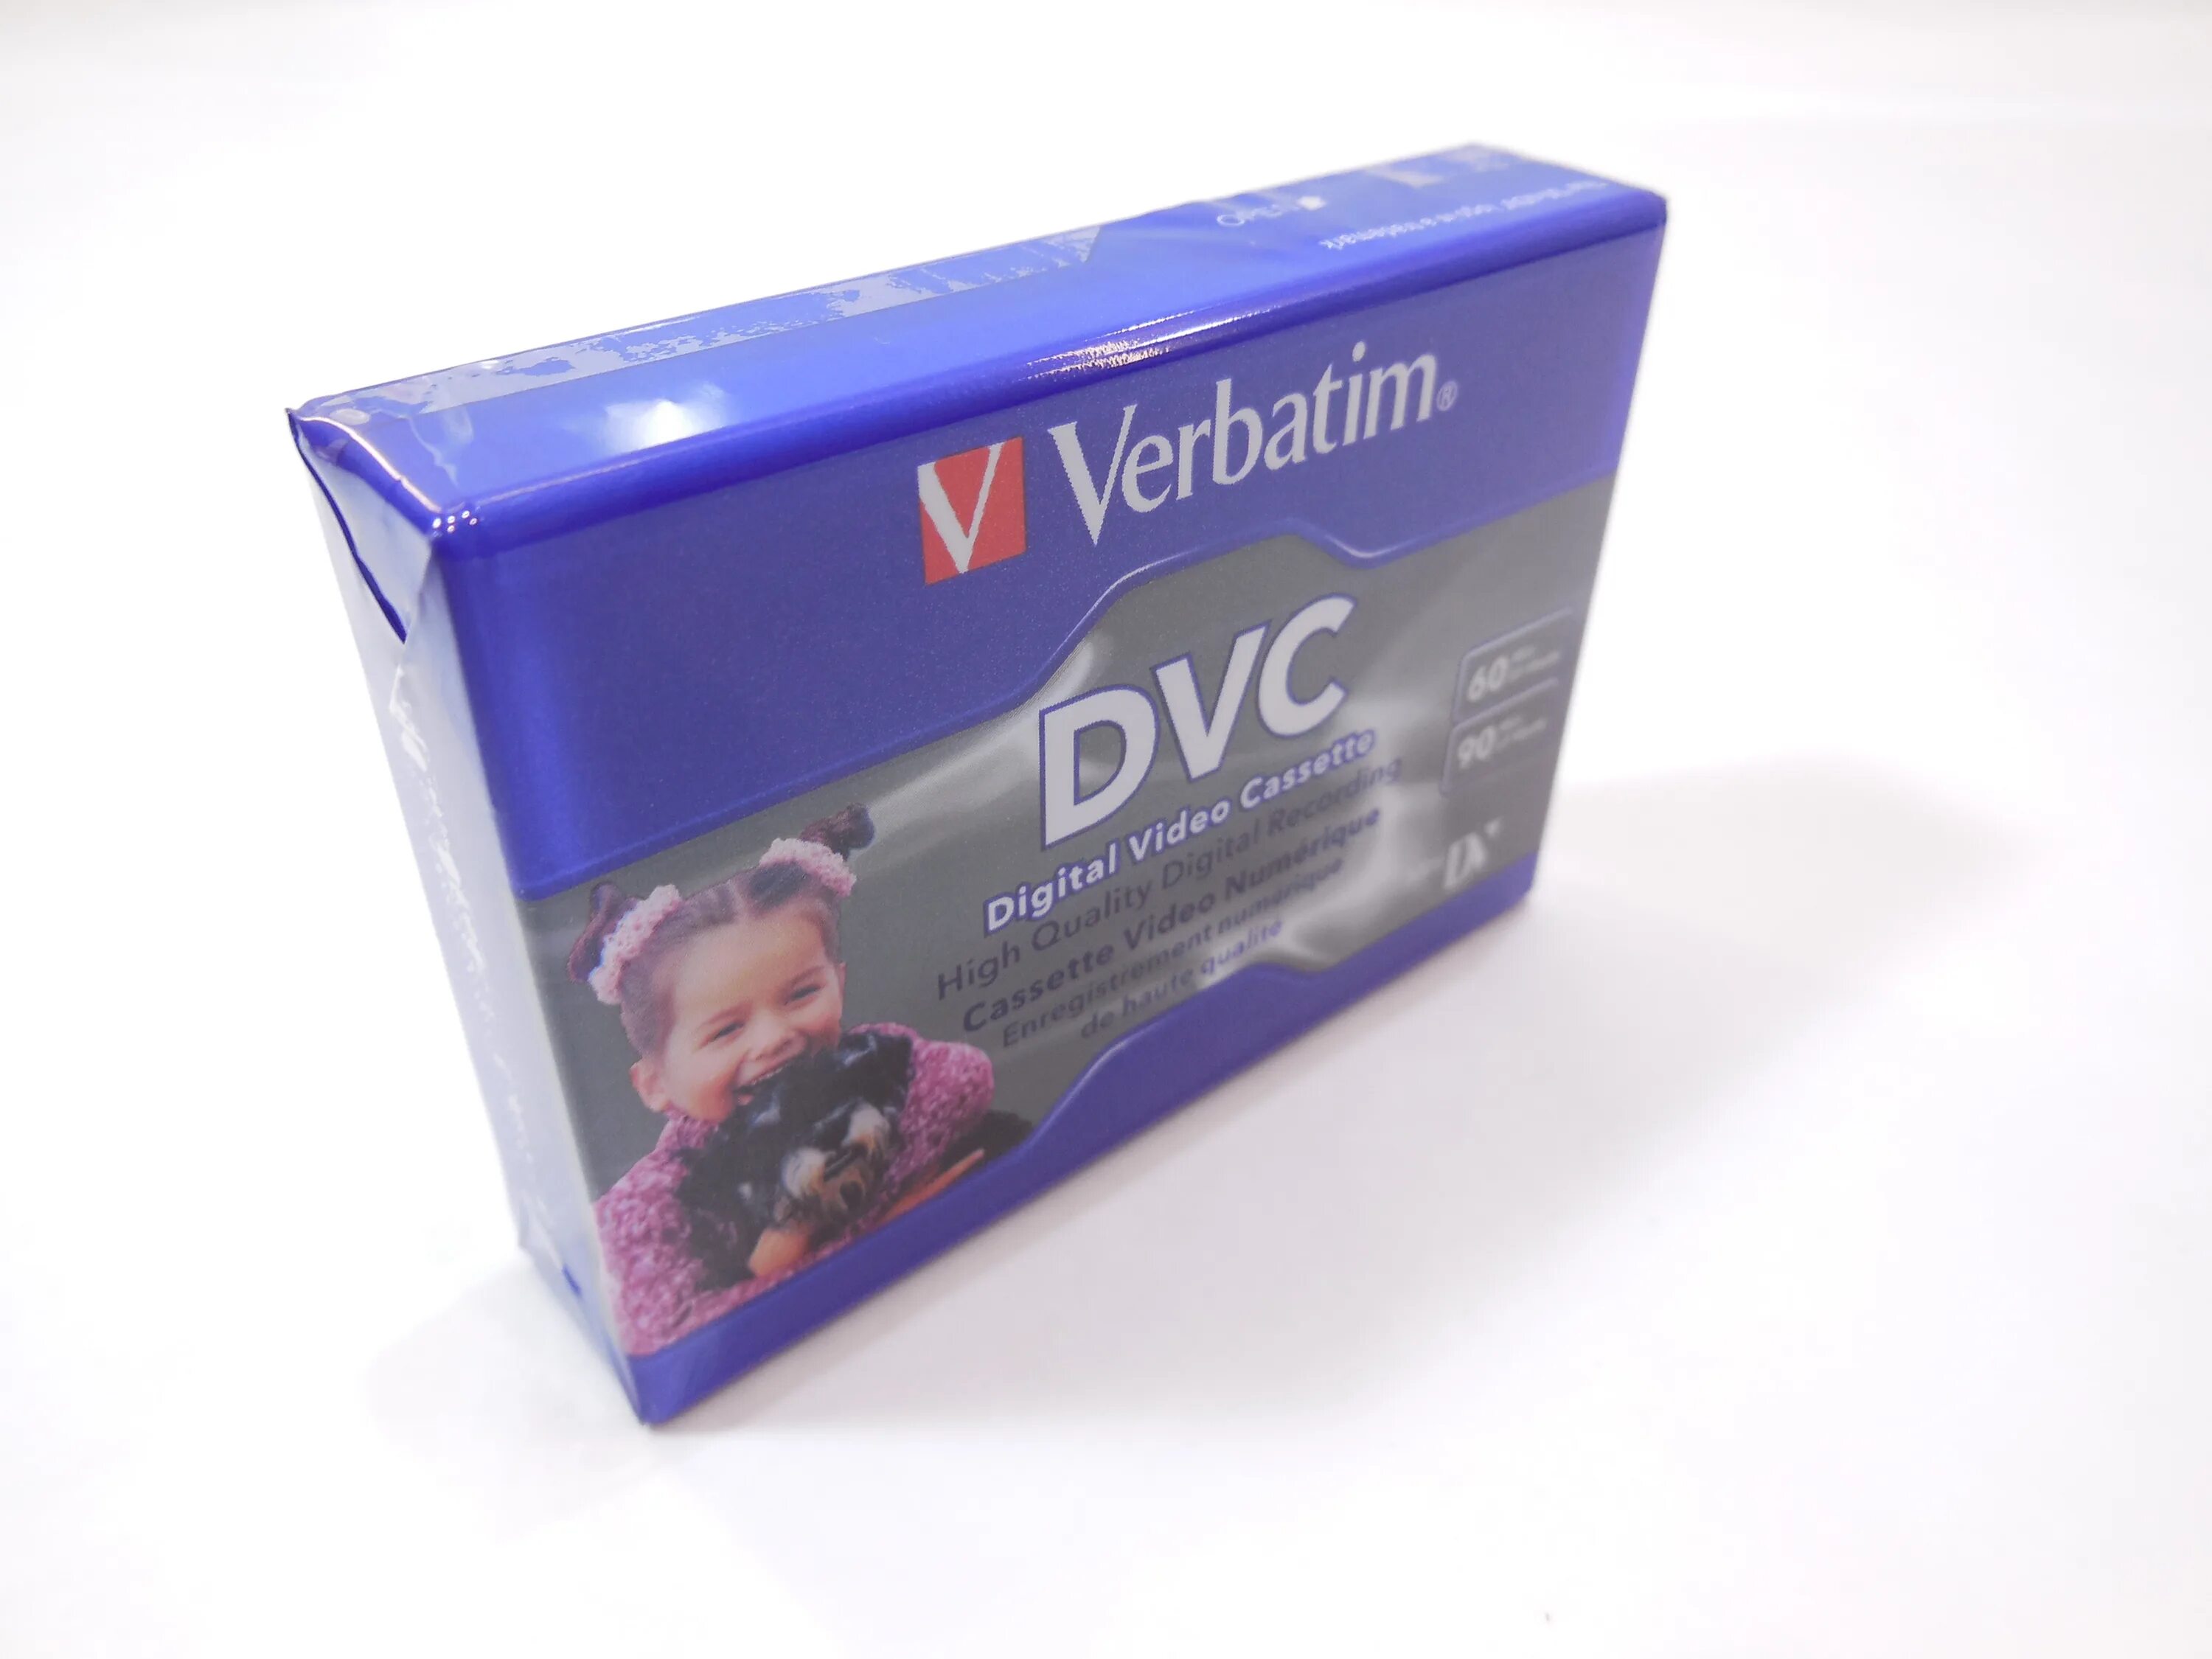 Кассета mini. Кассета MINIDV Verbatim. Кассета Verbatim 50 TB. Видеокассета Mini DV. DVC кассета.